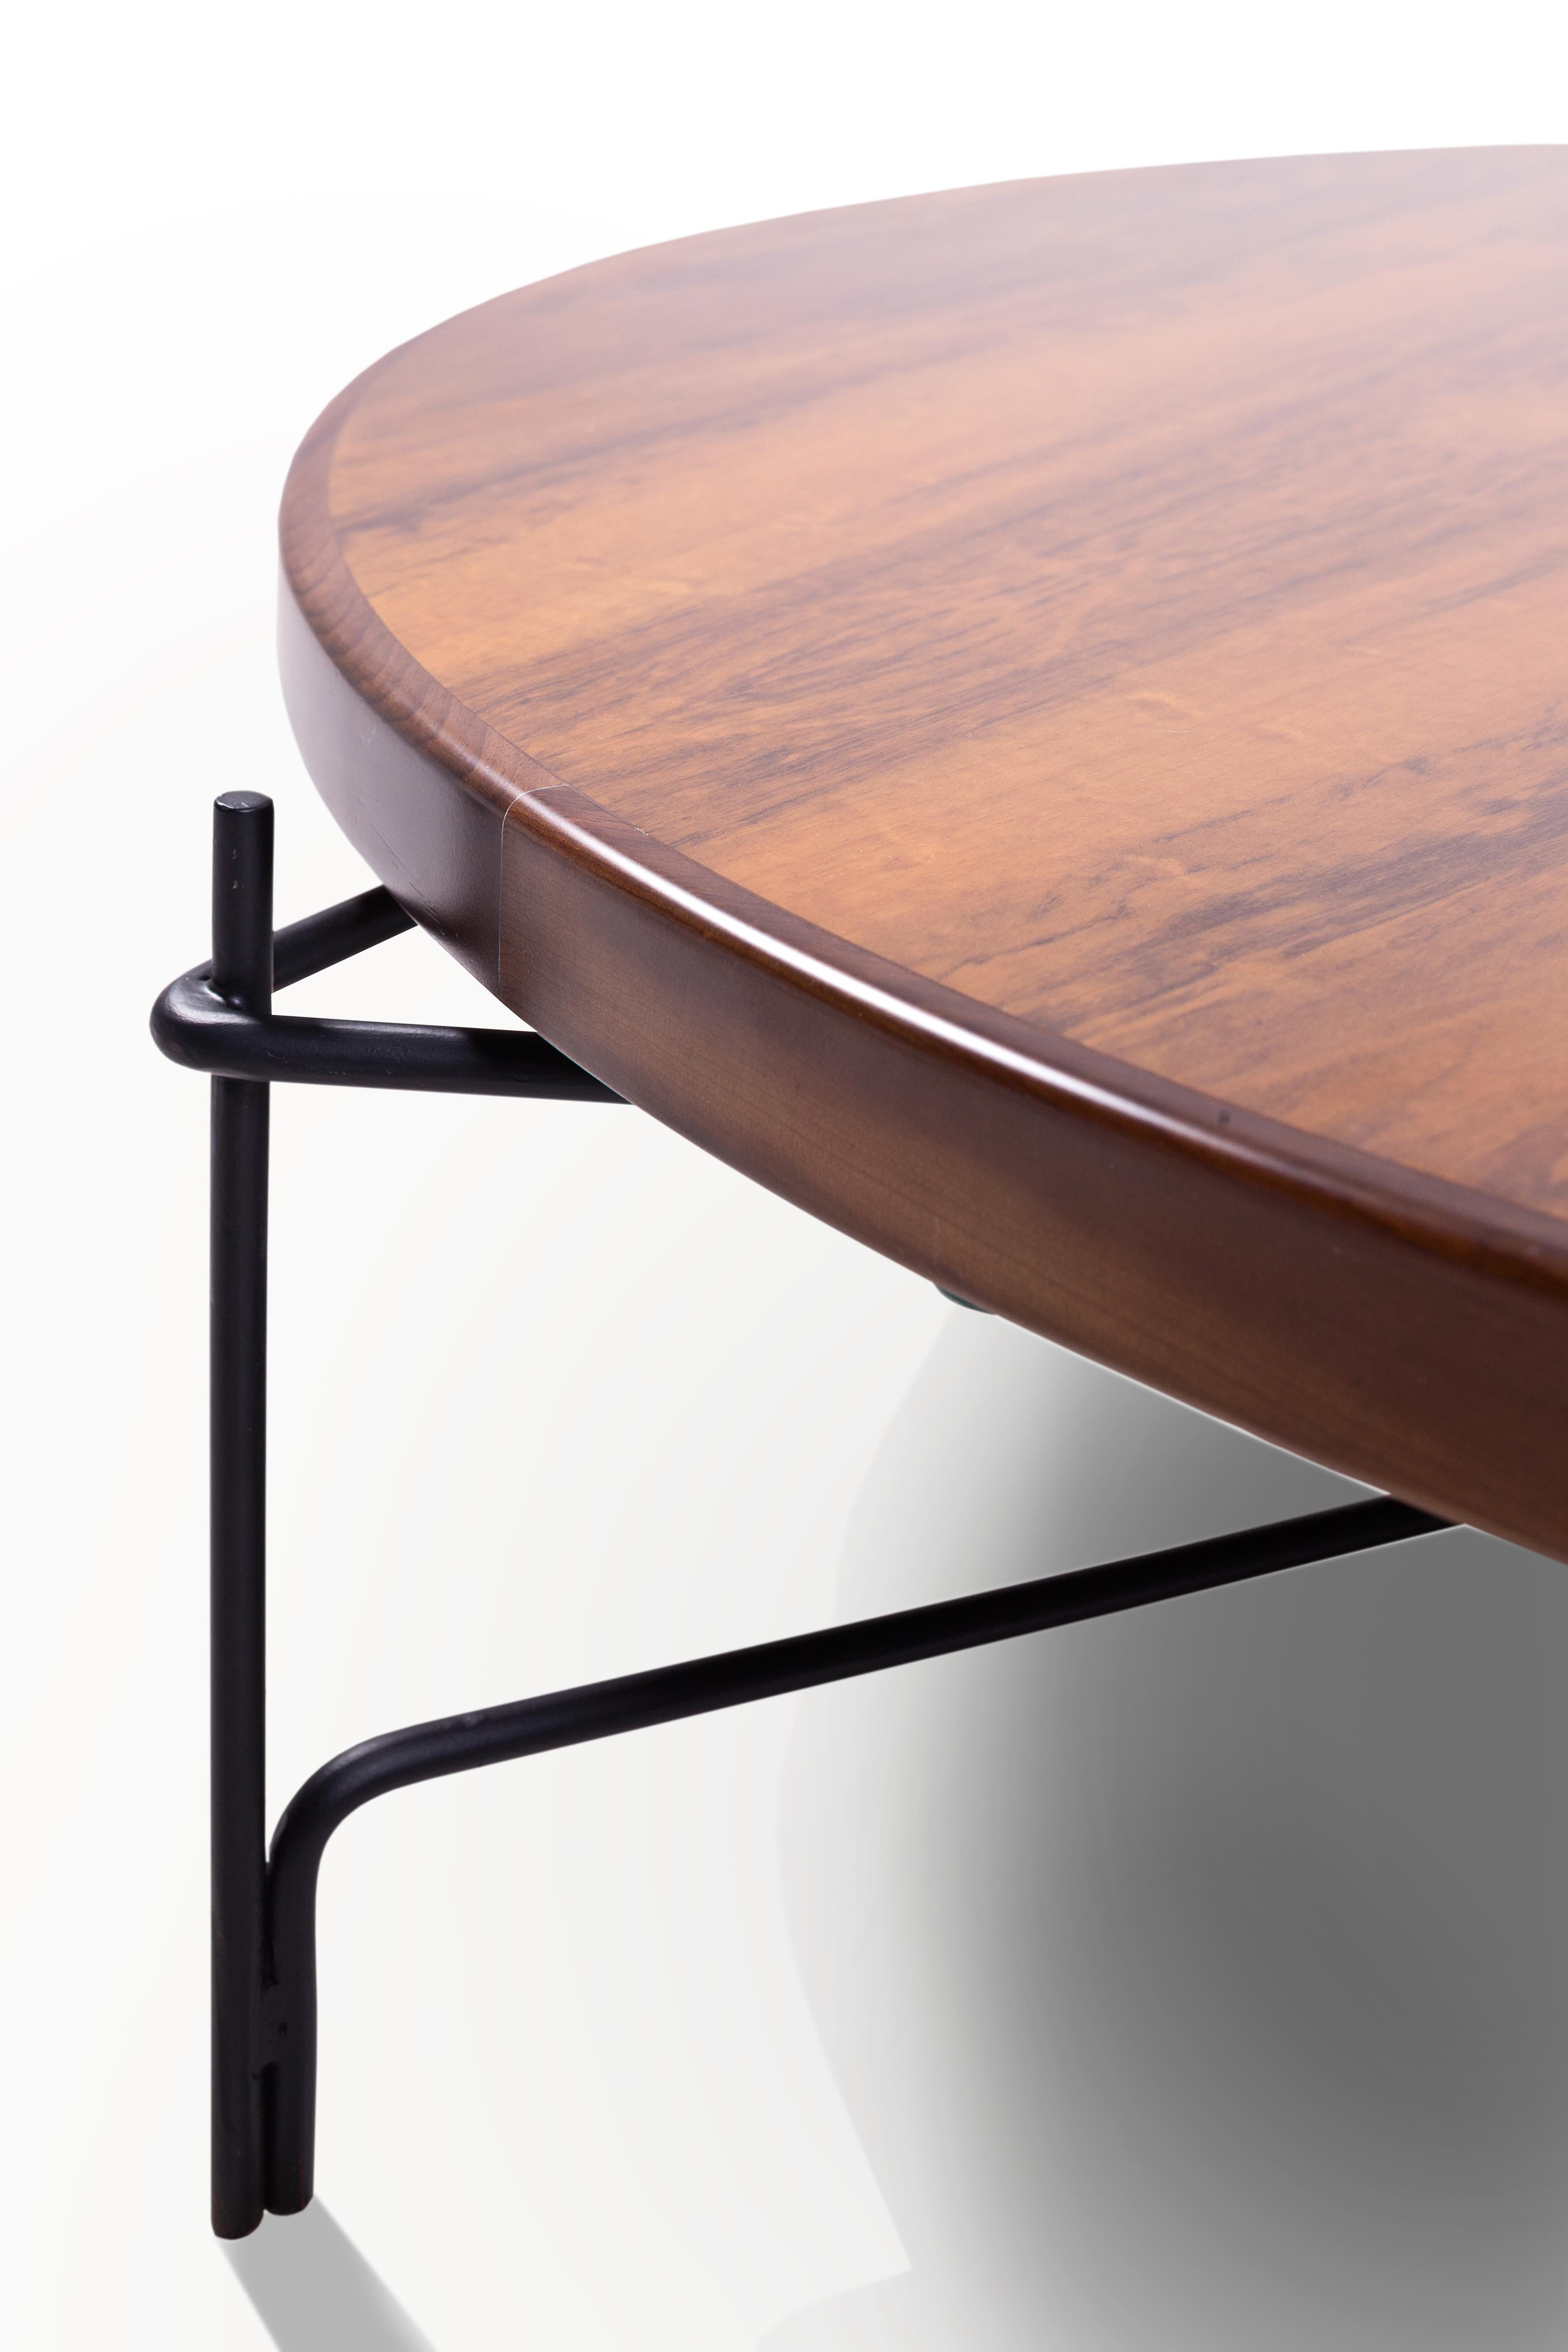 Cette table basse brésilienne minimaliste en acier et bois est conçue dans un raisonnement architectonique et géométrique. 
les trois colonnes sont 